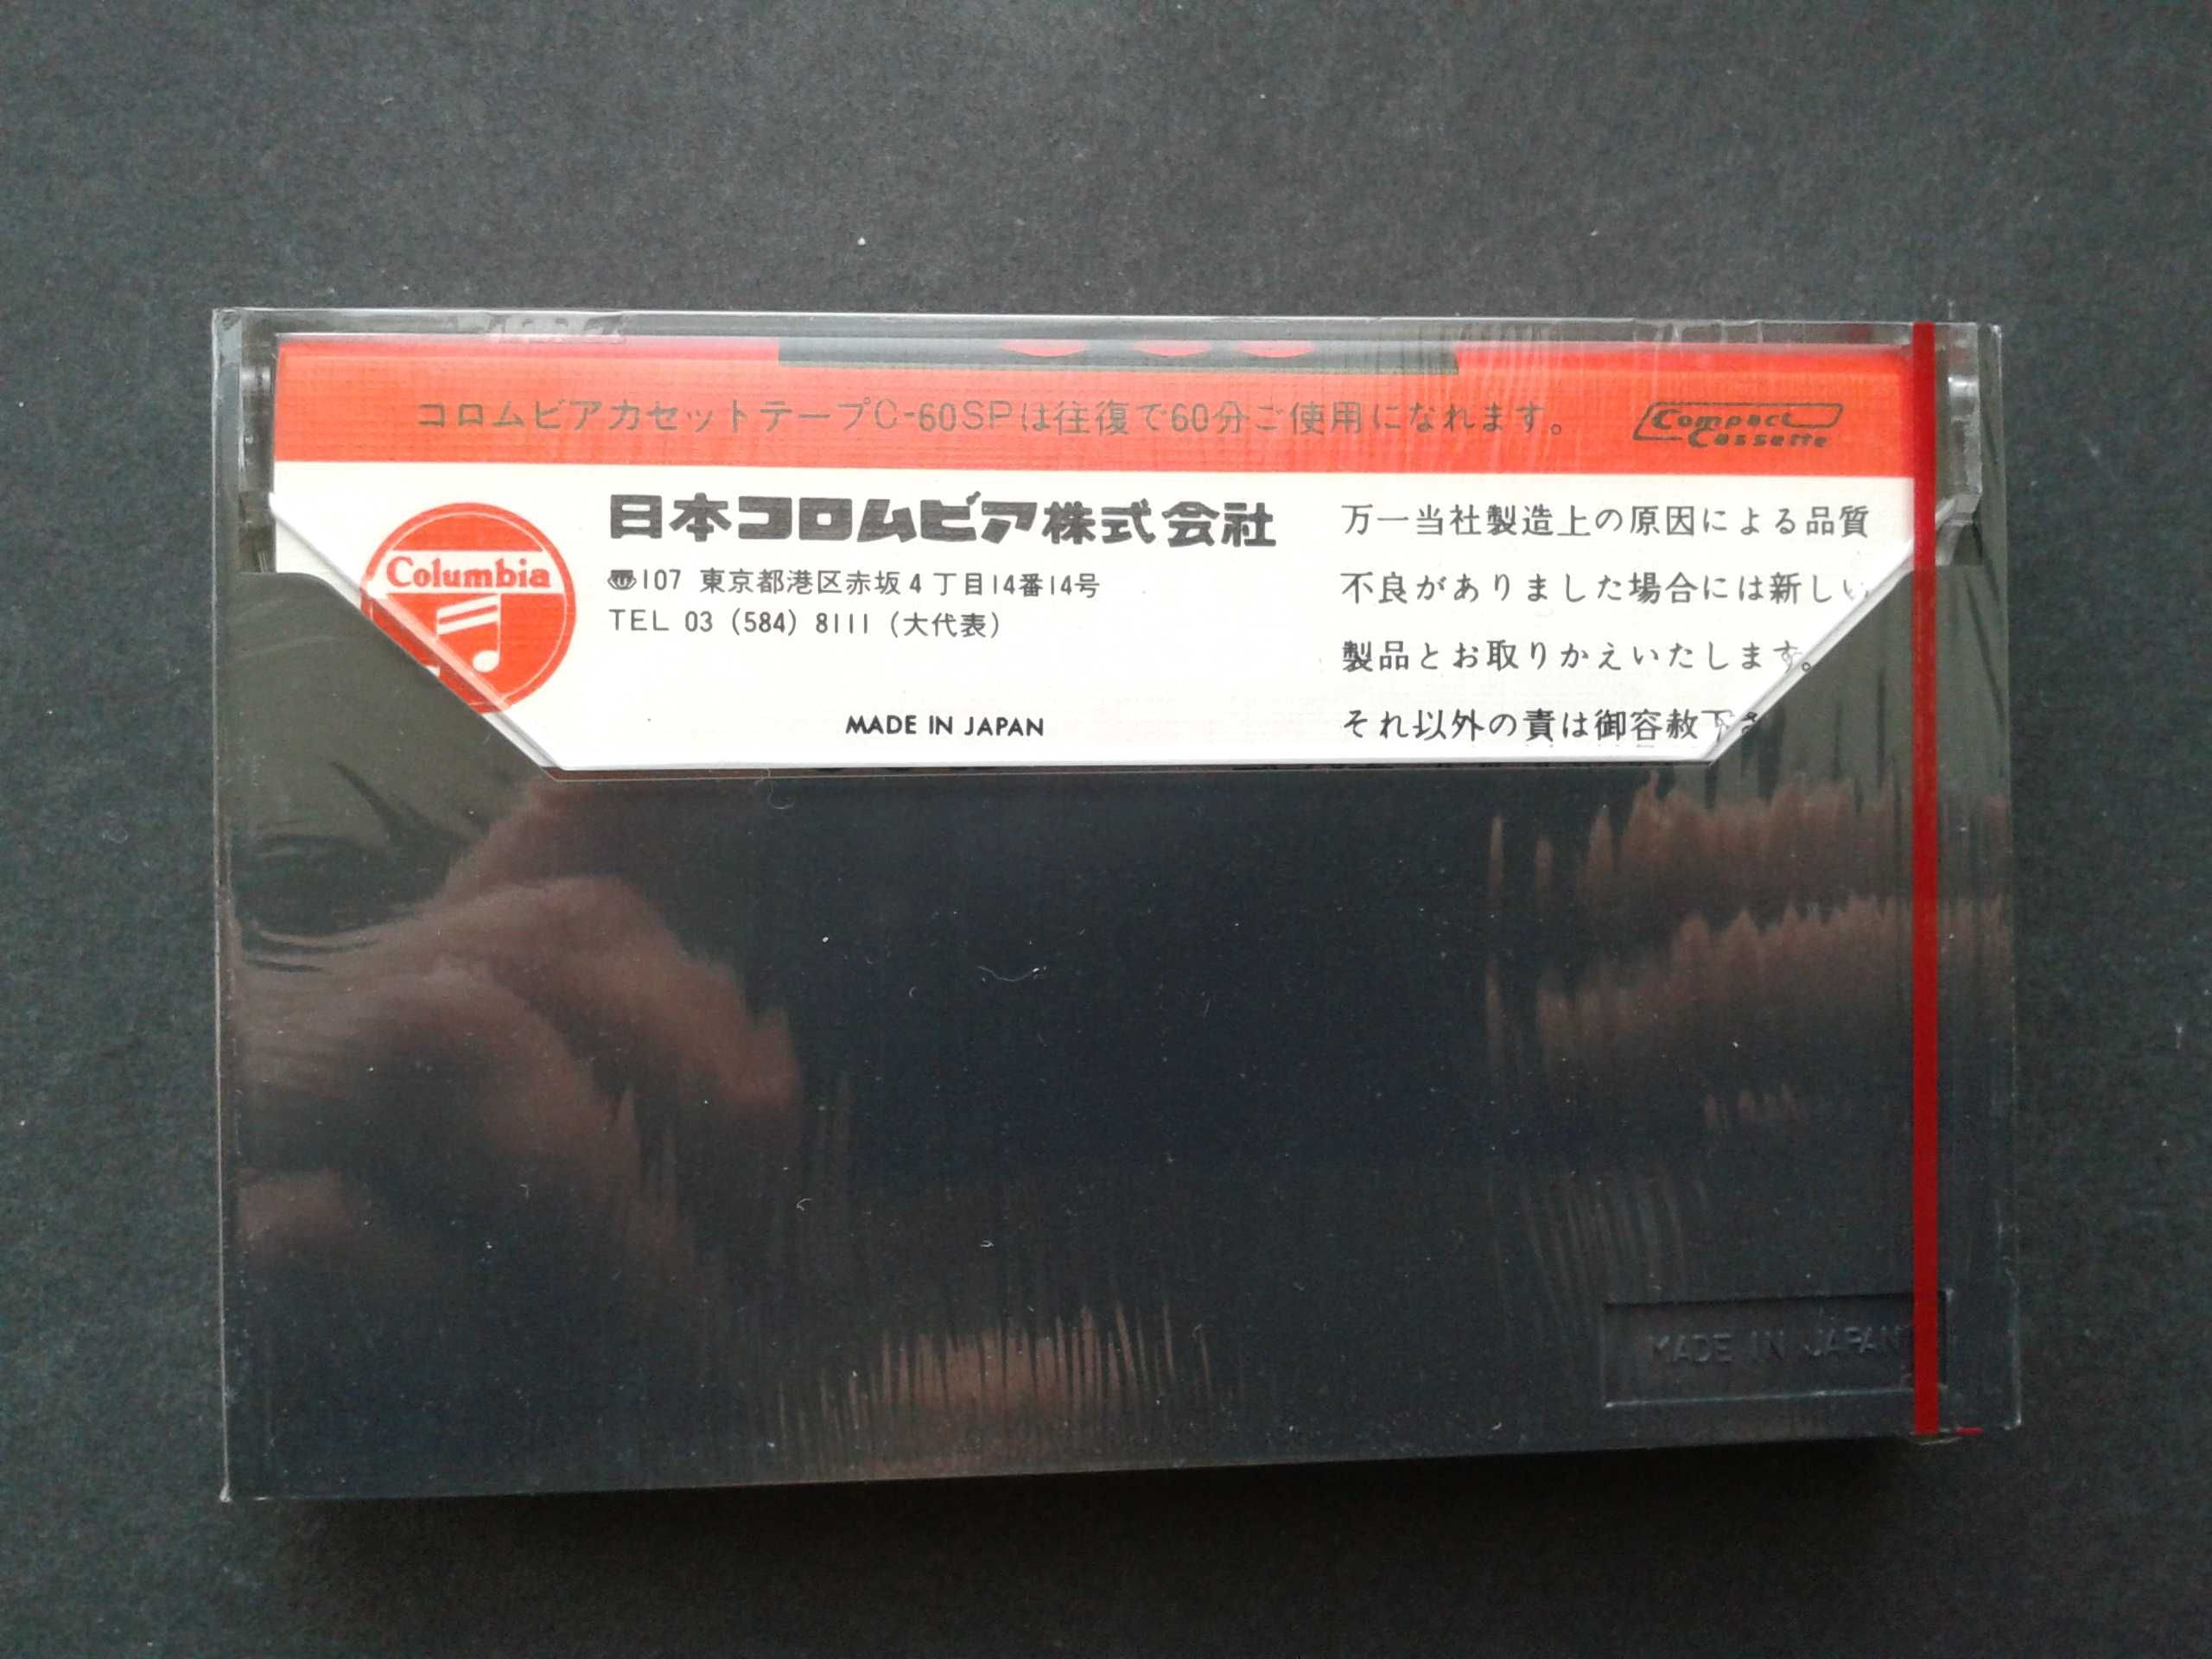 Аудиокассеты Columbia C60 SP (Denon)